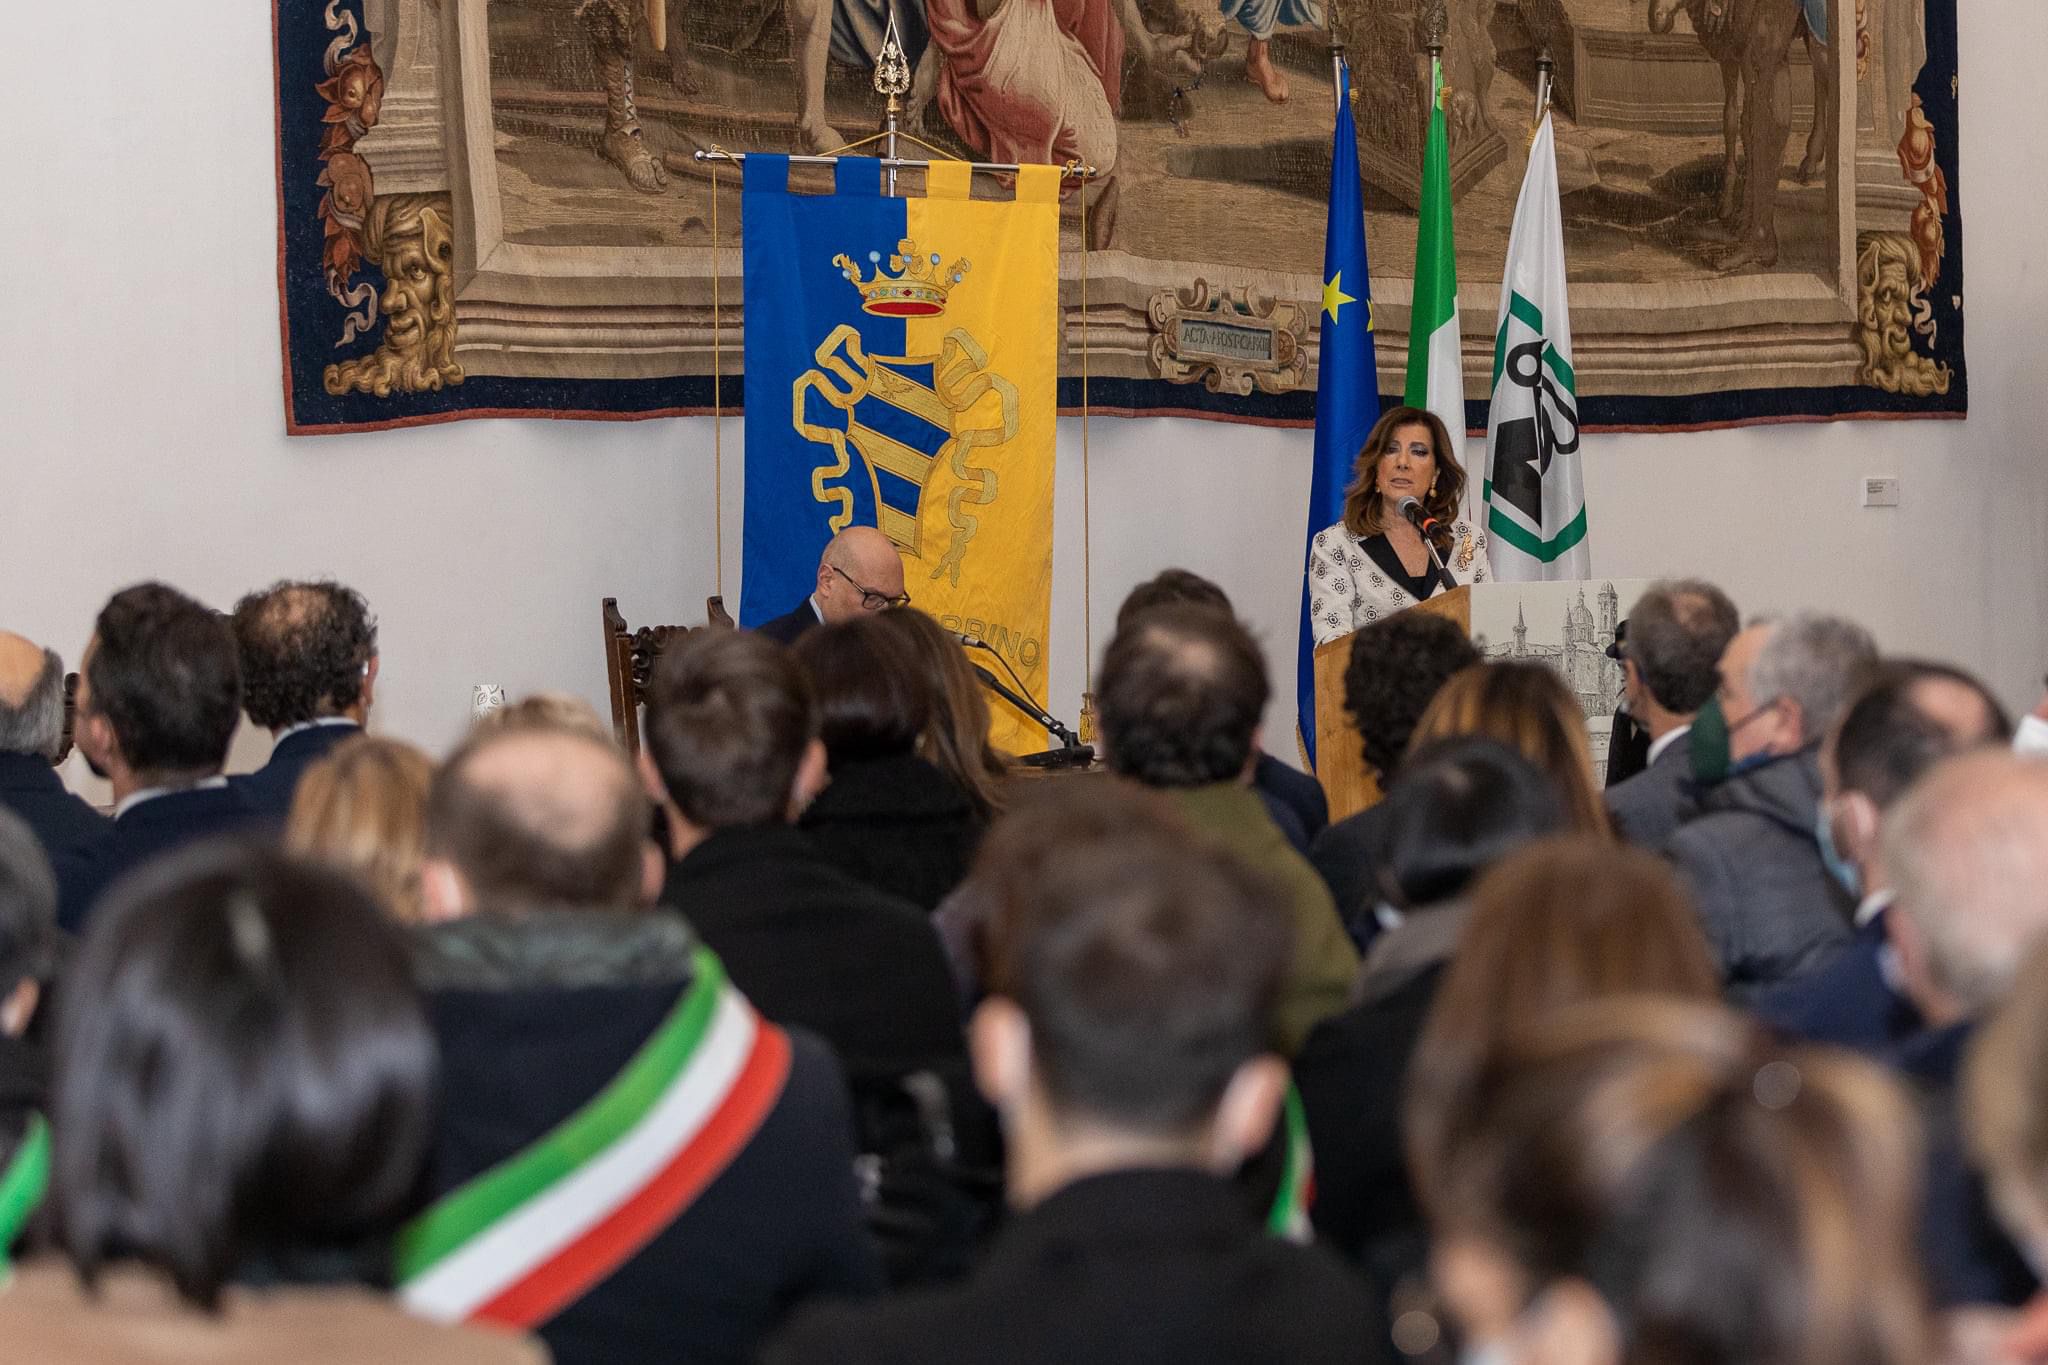 La Presidente del Senato, Maria Elisabetta Alberti Casellati, rende omaggio a Carlo Bo